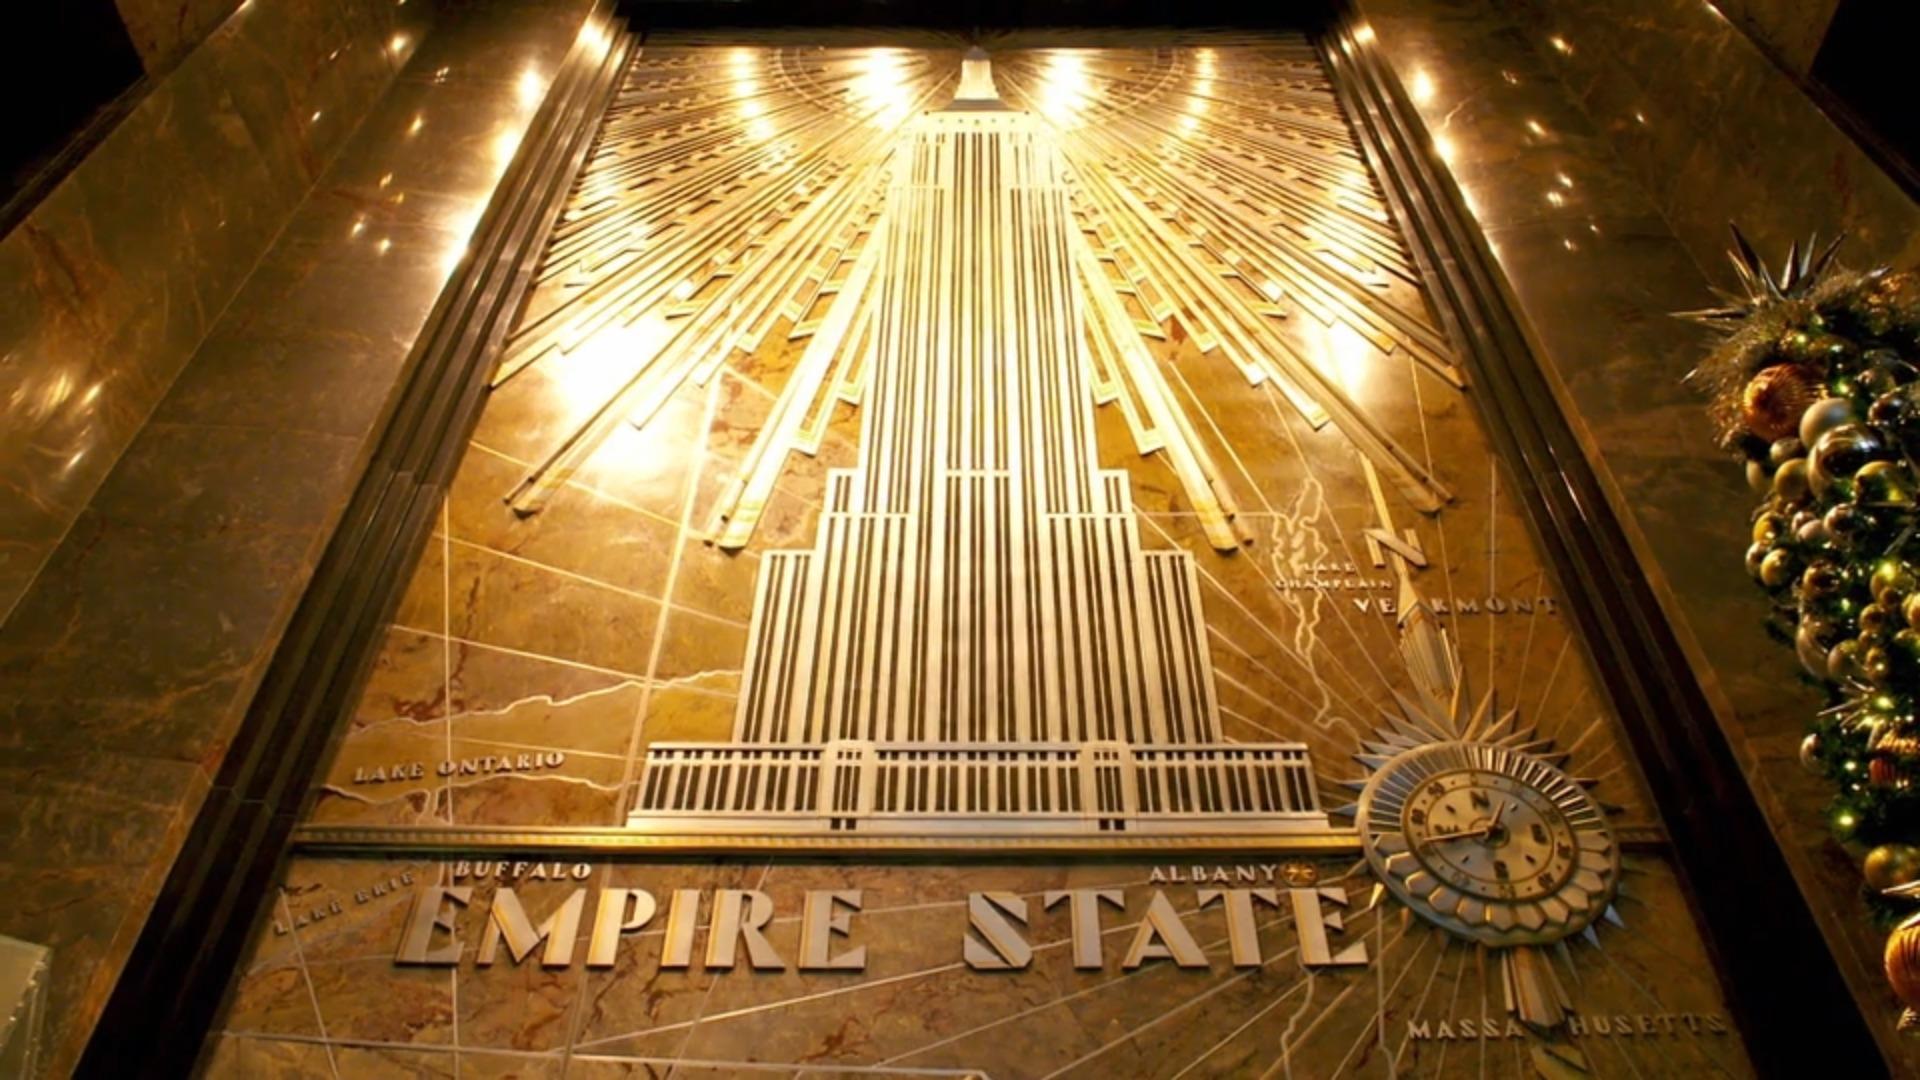 Empire State Building: Klimaneutral bis in den 102. Stock Energieverbrauch von Wolkenkratzer reduziert